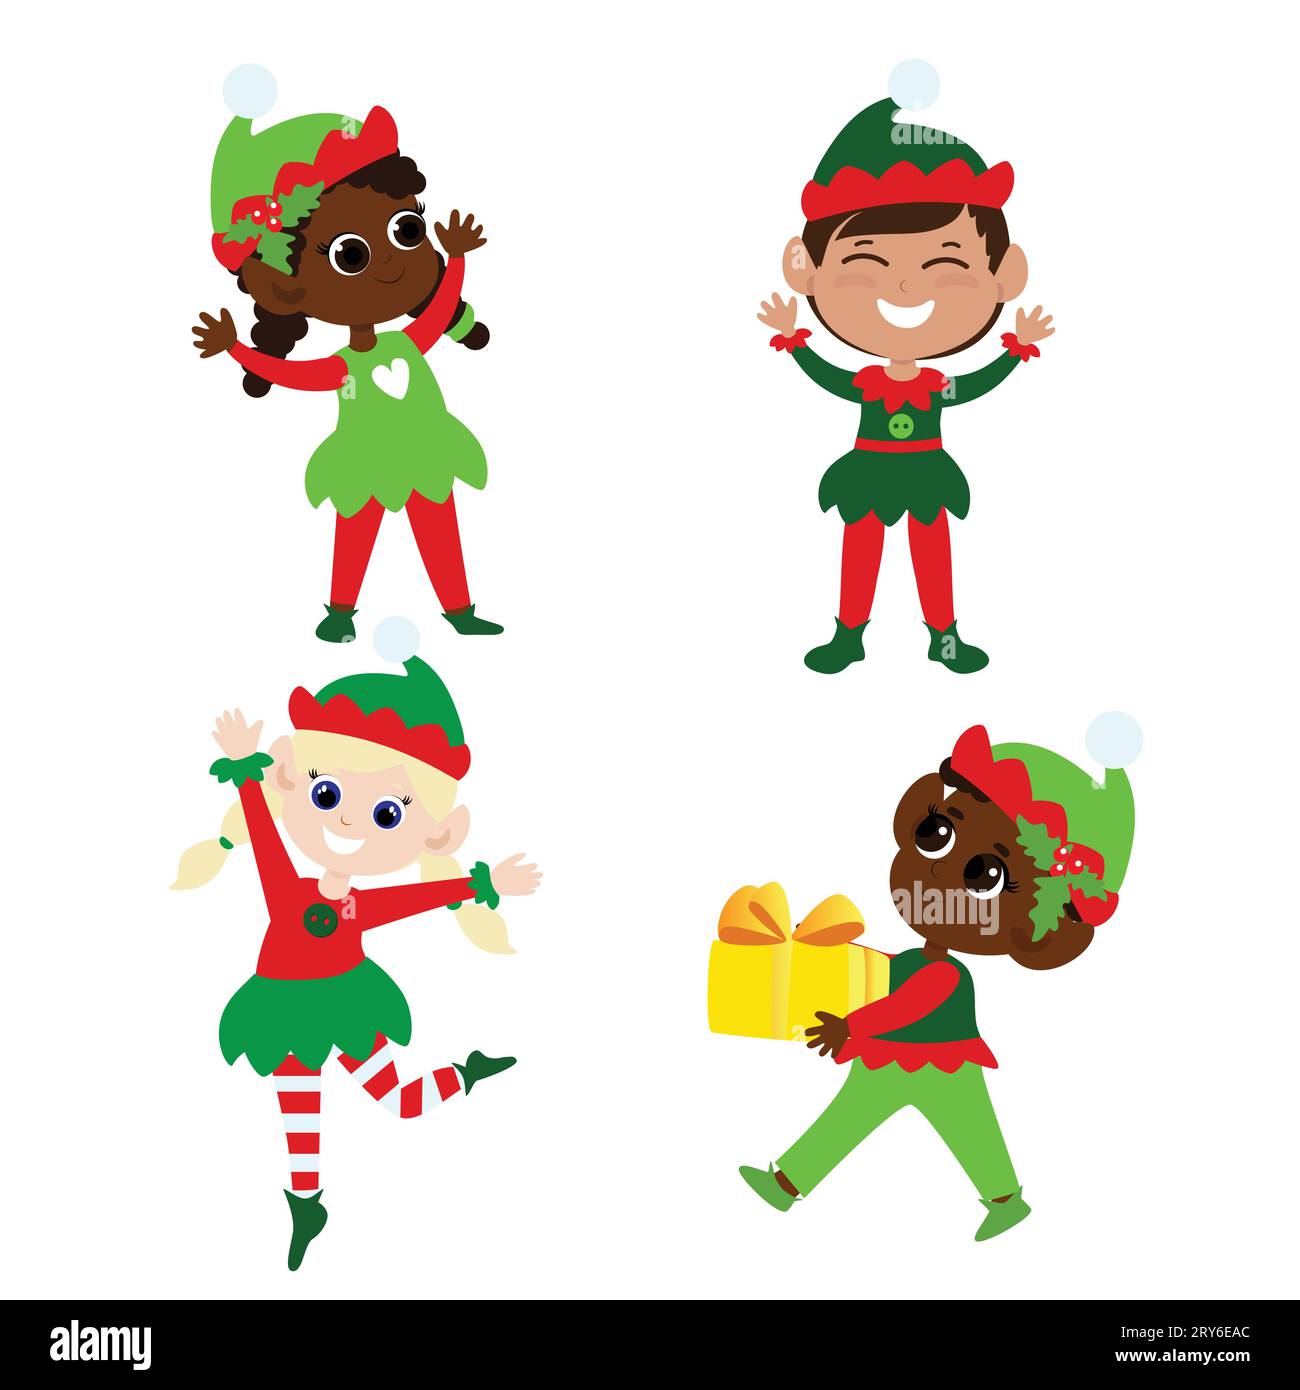 Mettez les elfes de Noël. Collection de Noël garçons et filles multiculturels en costumes traditionnels d'elfe. Ils dansent, sourient, apportent des cadeaux. Illustration de Vecteur